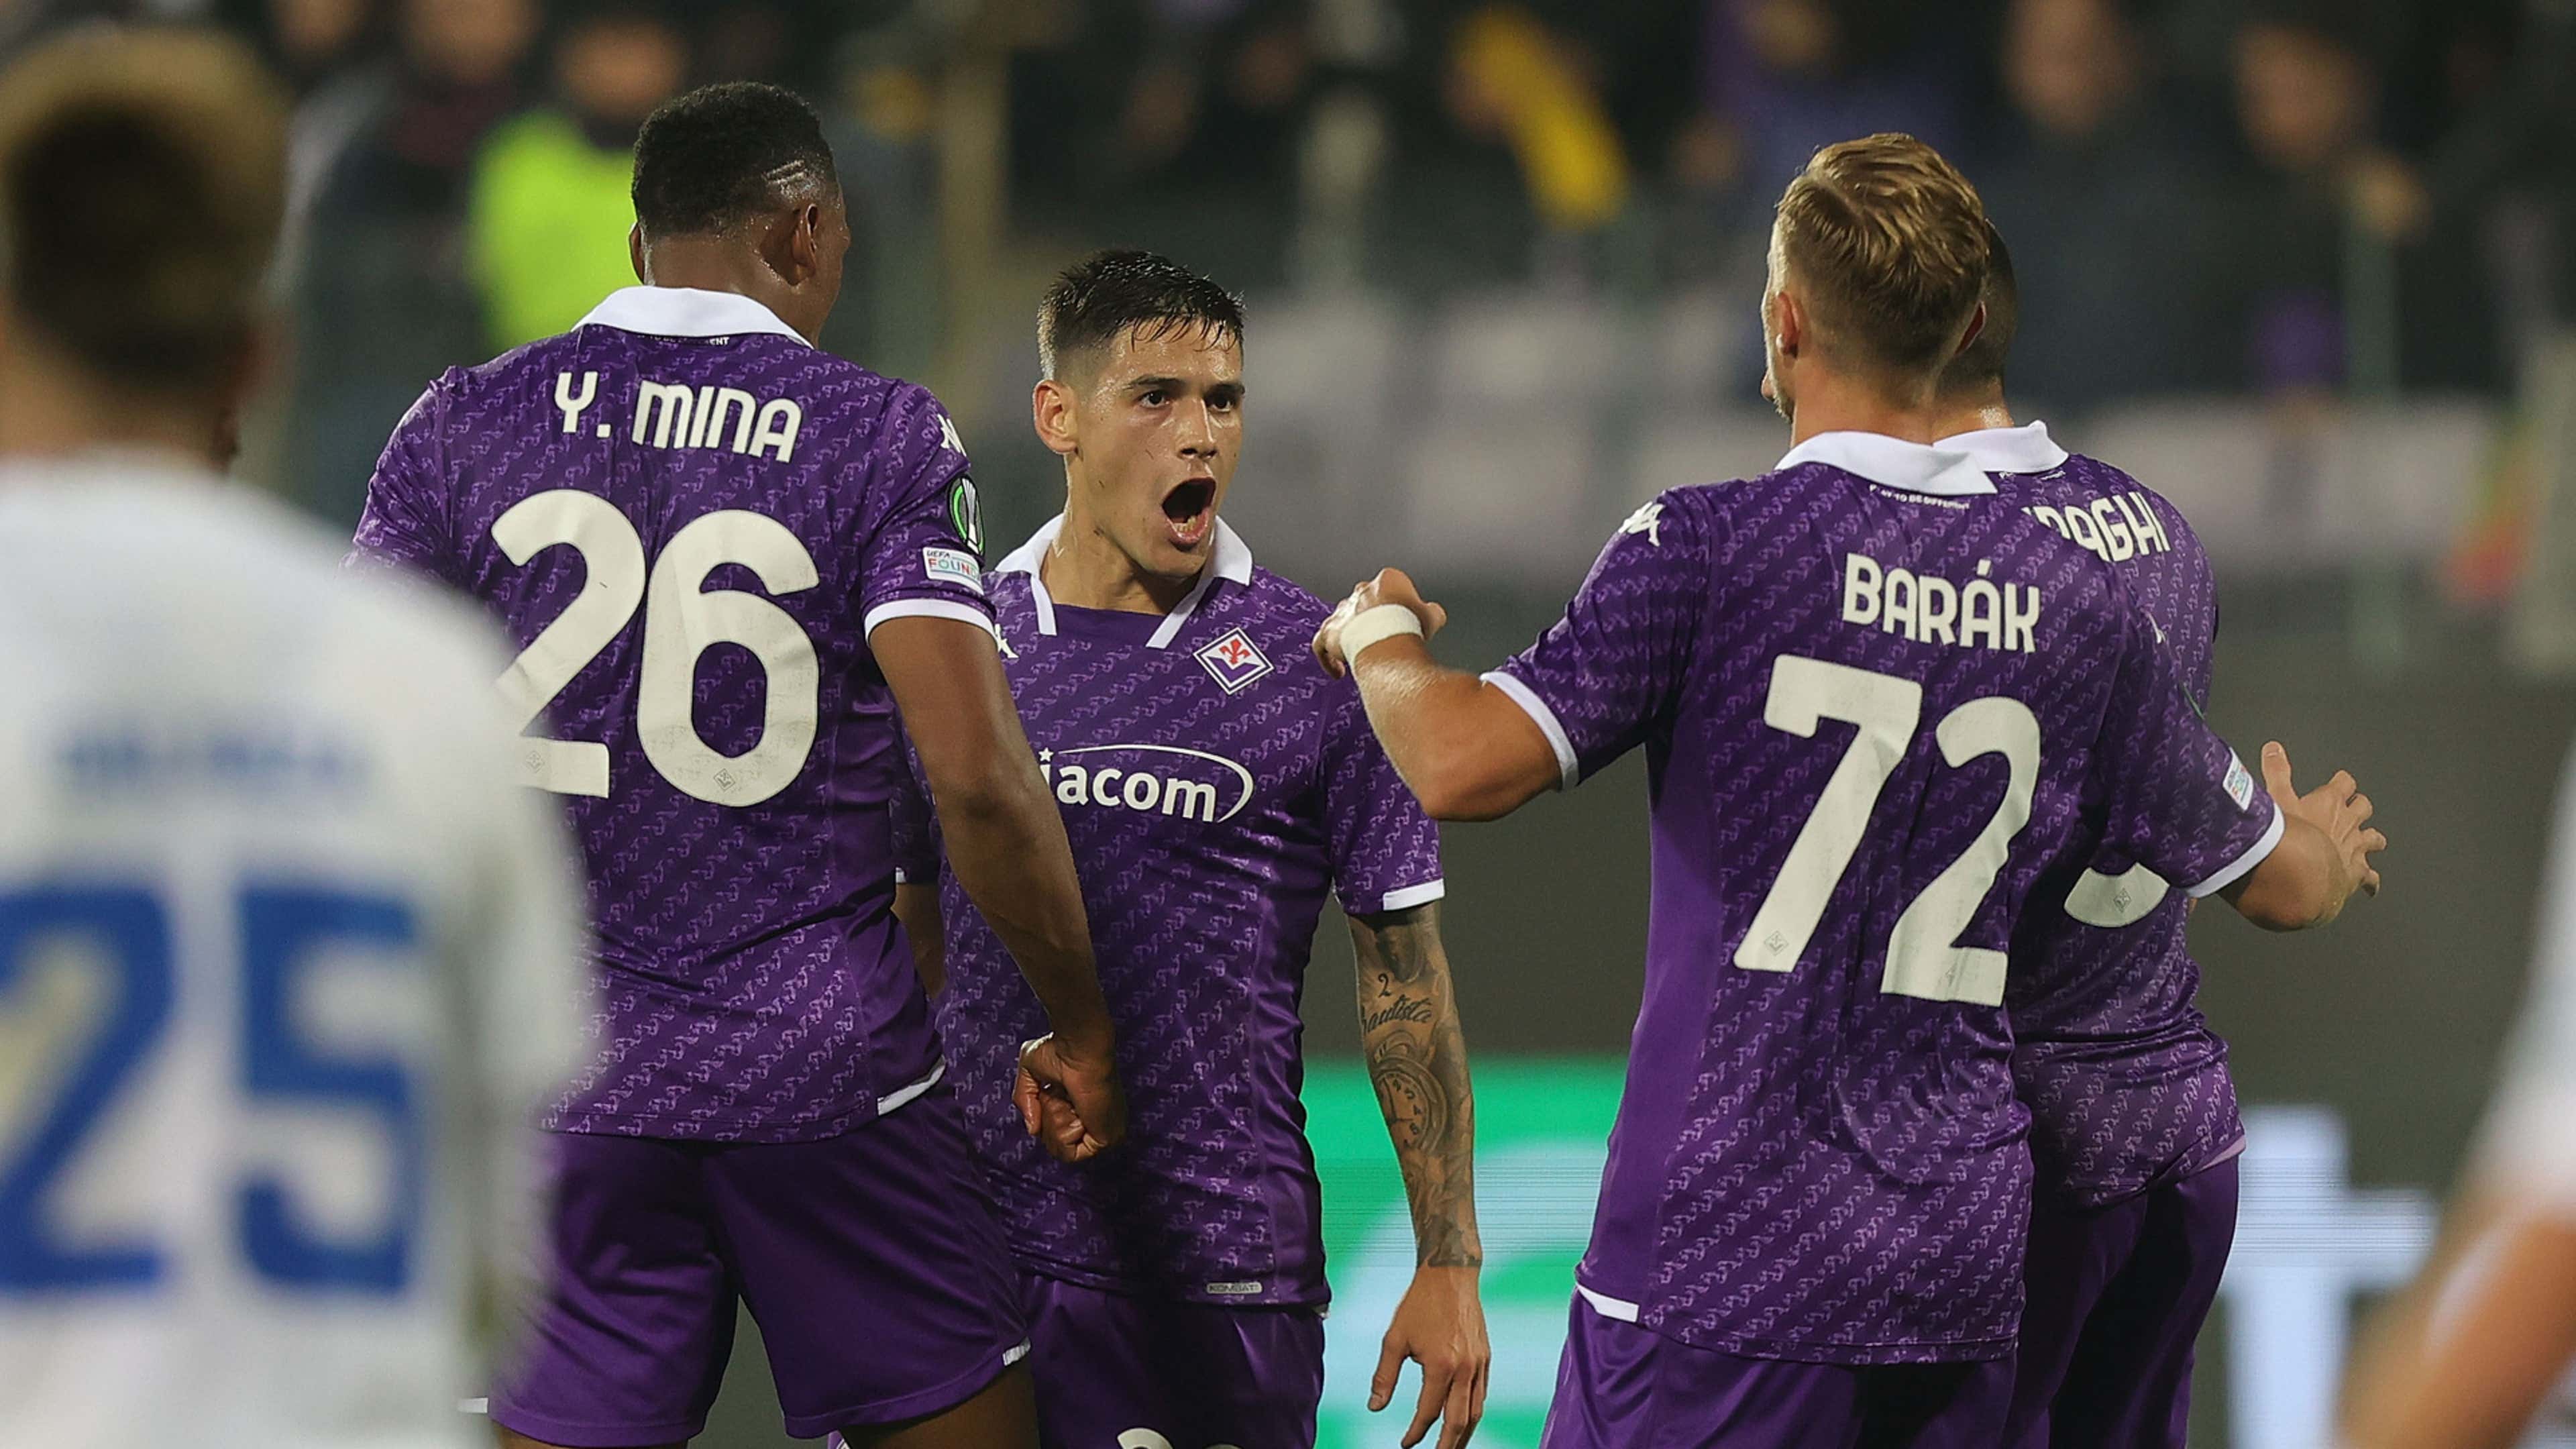 Pronostico Genk-Fiorentina, statistiche e consigli per la partita